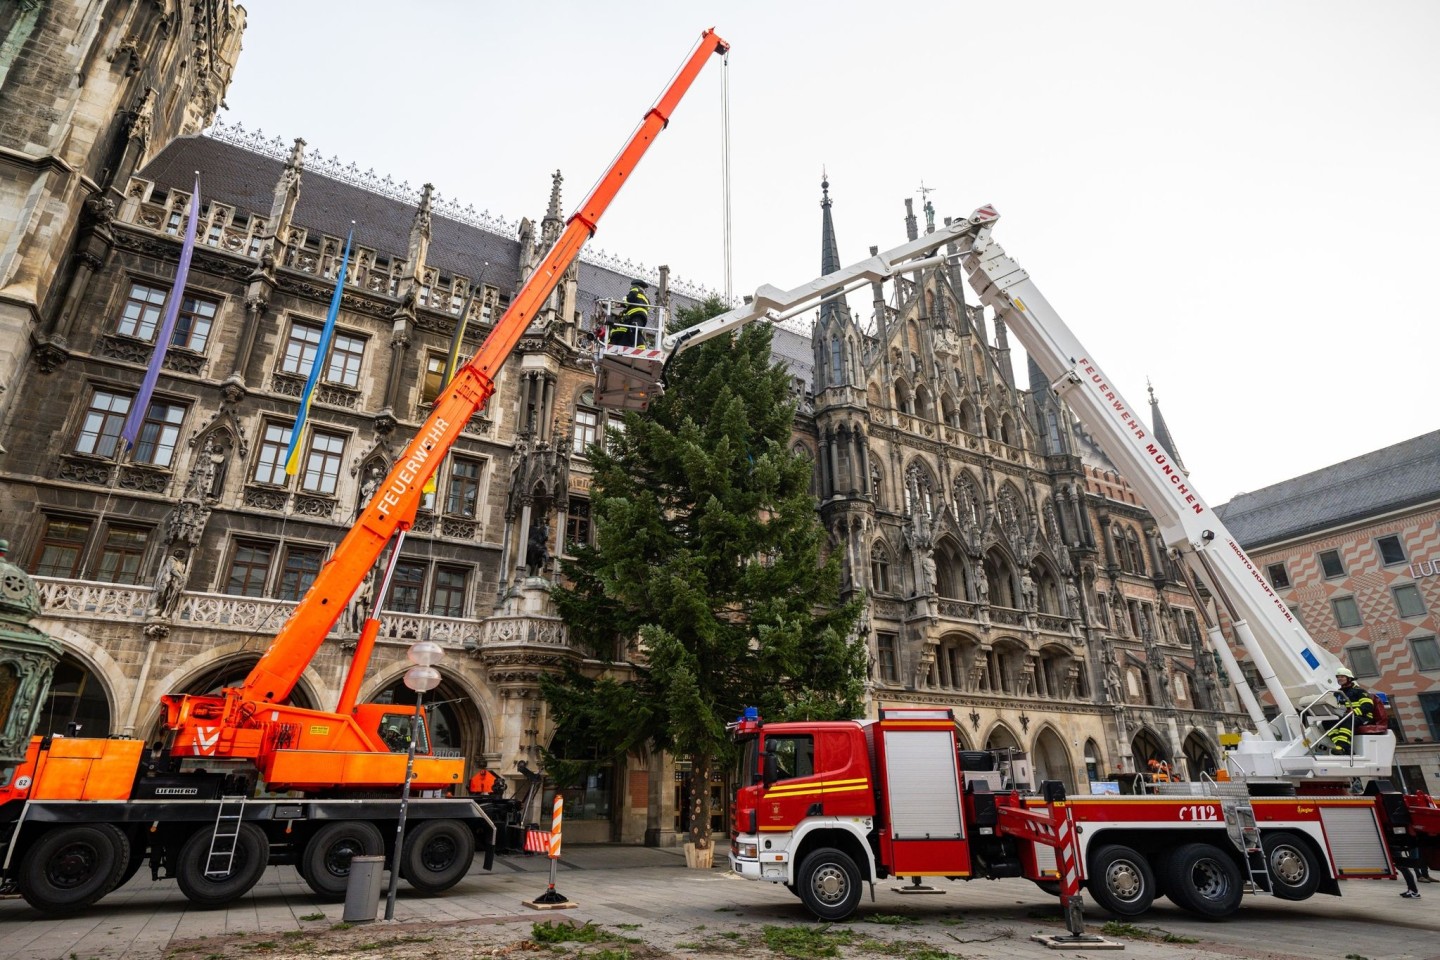 Feuerwehrleute stellen mit Hilfe eines Krans den Weihnachtsbaum auf dem Münchner Marienplatz auf.